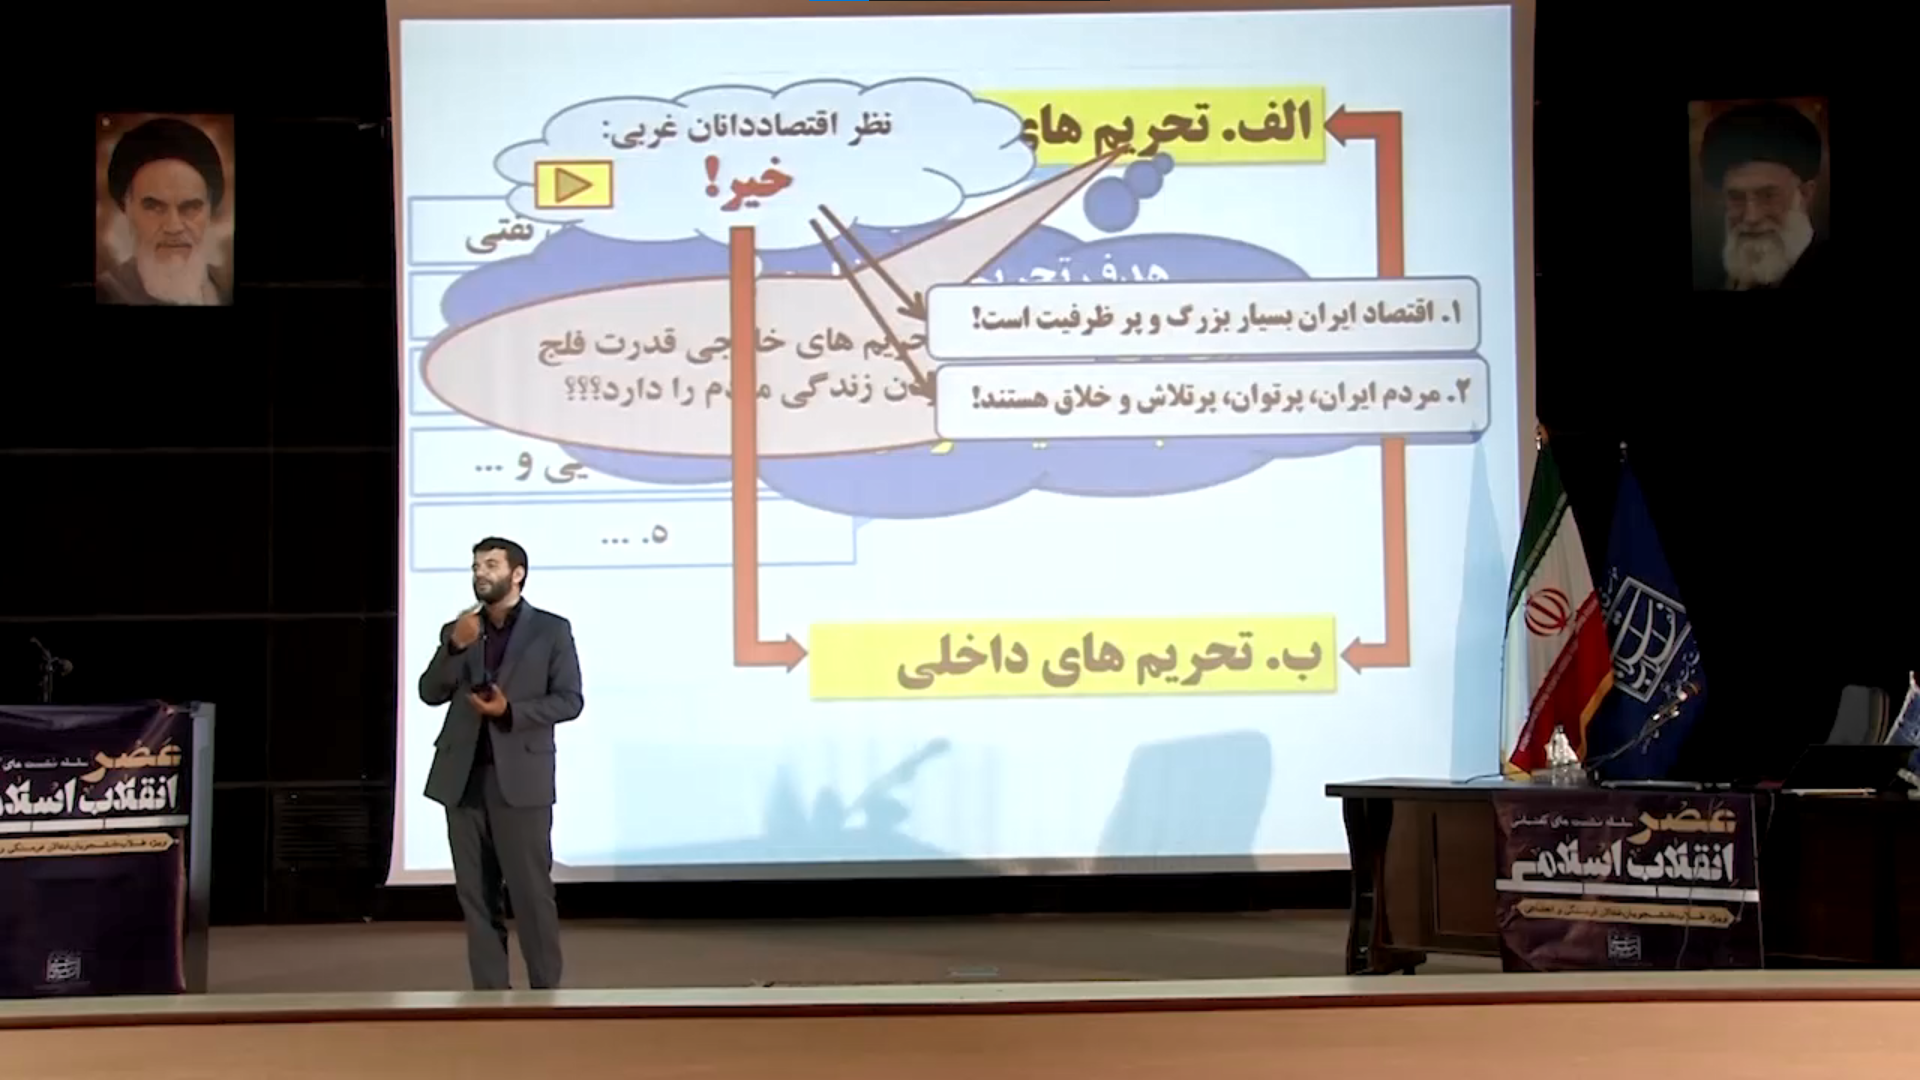 تیزر معرفی سلسله نشستهای گفتمانی عصر انقلاب اسلامی